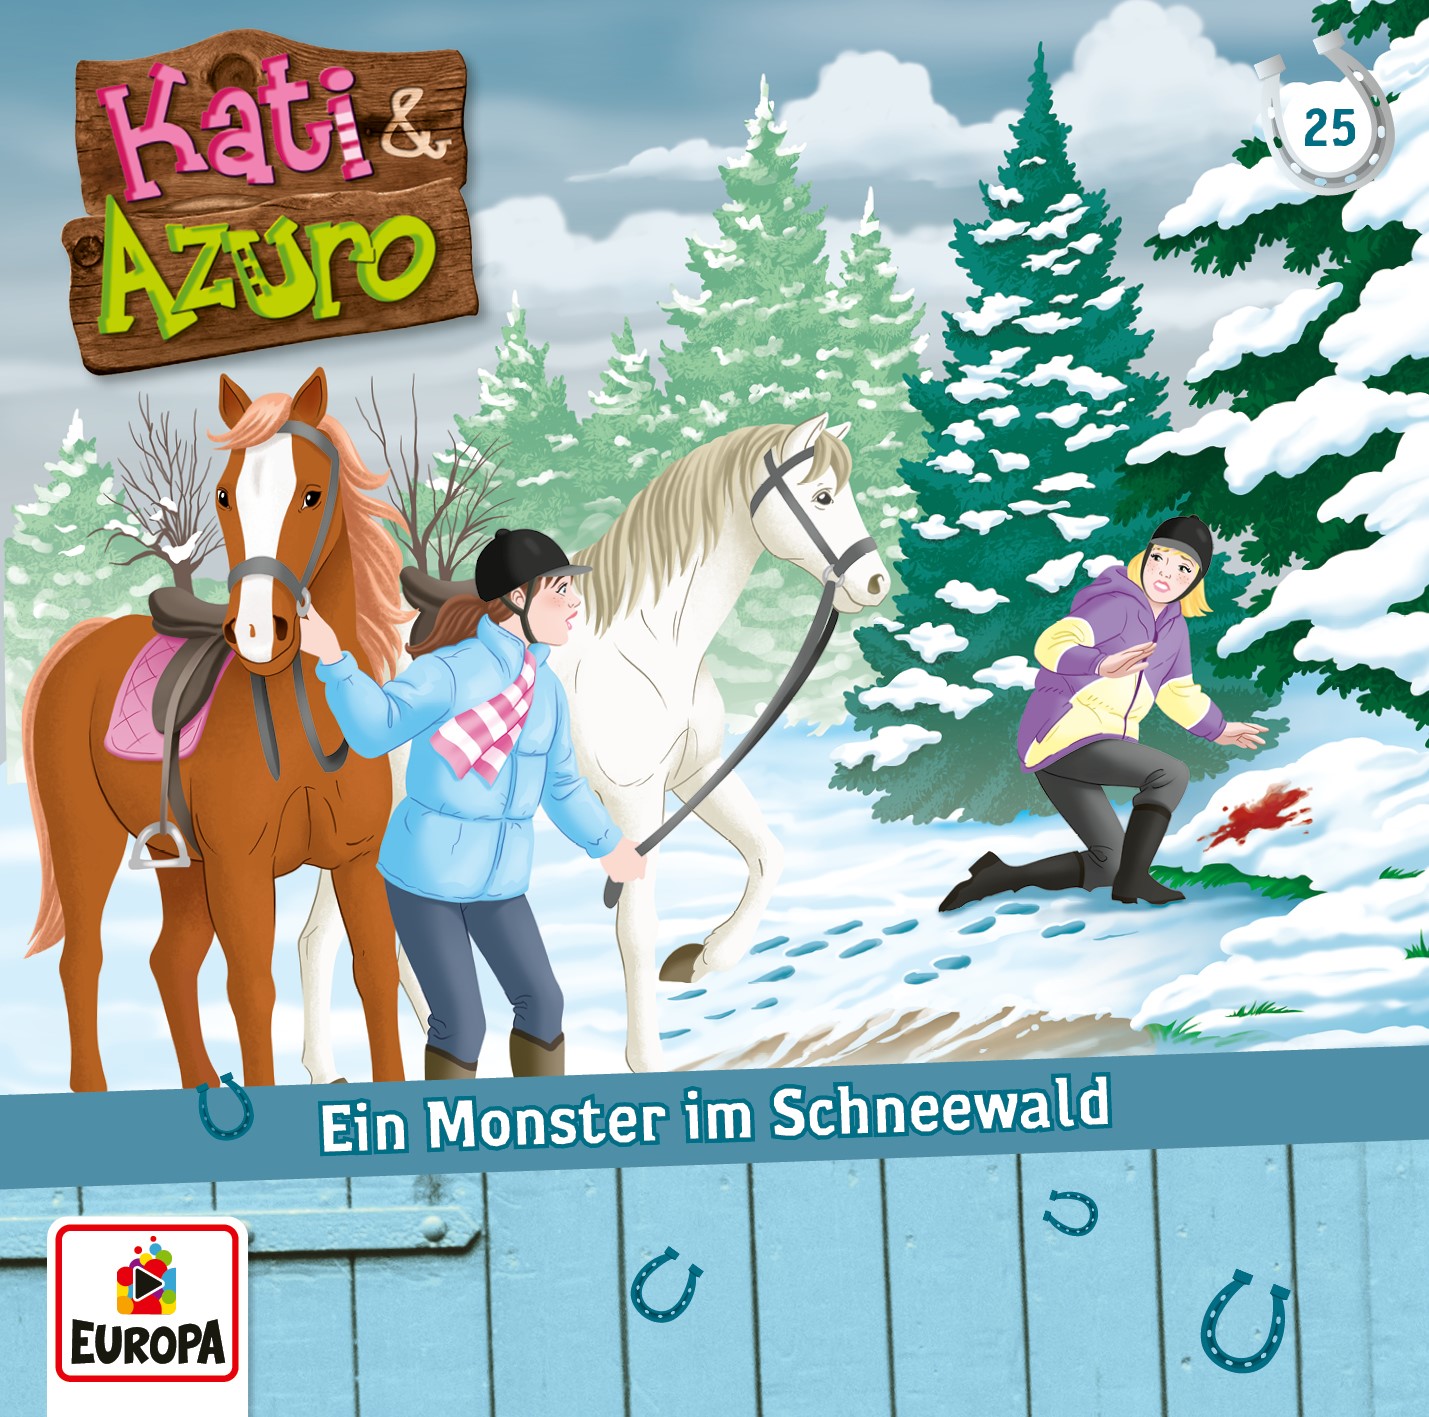 Kati & Azuro: Ein Monster im Schneewald